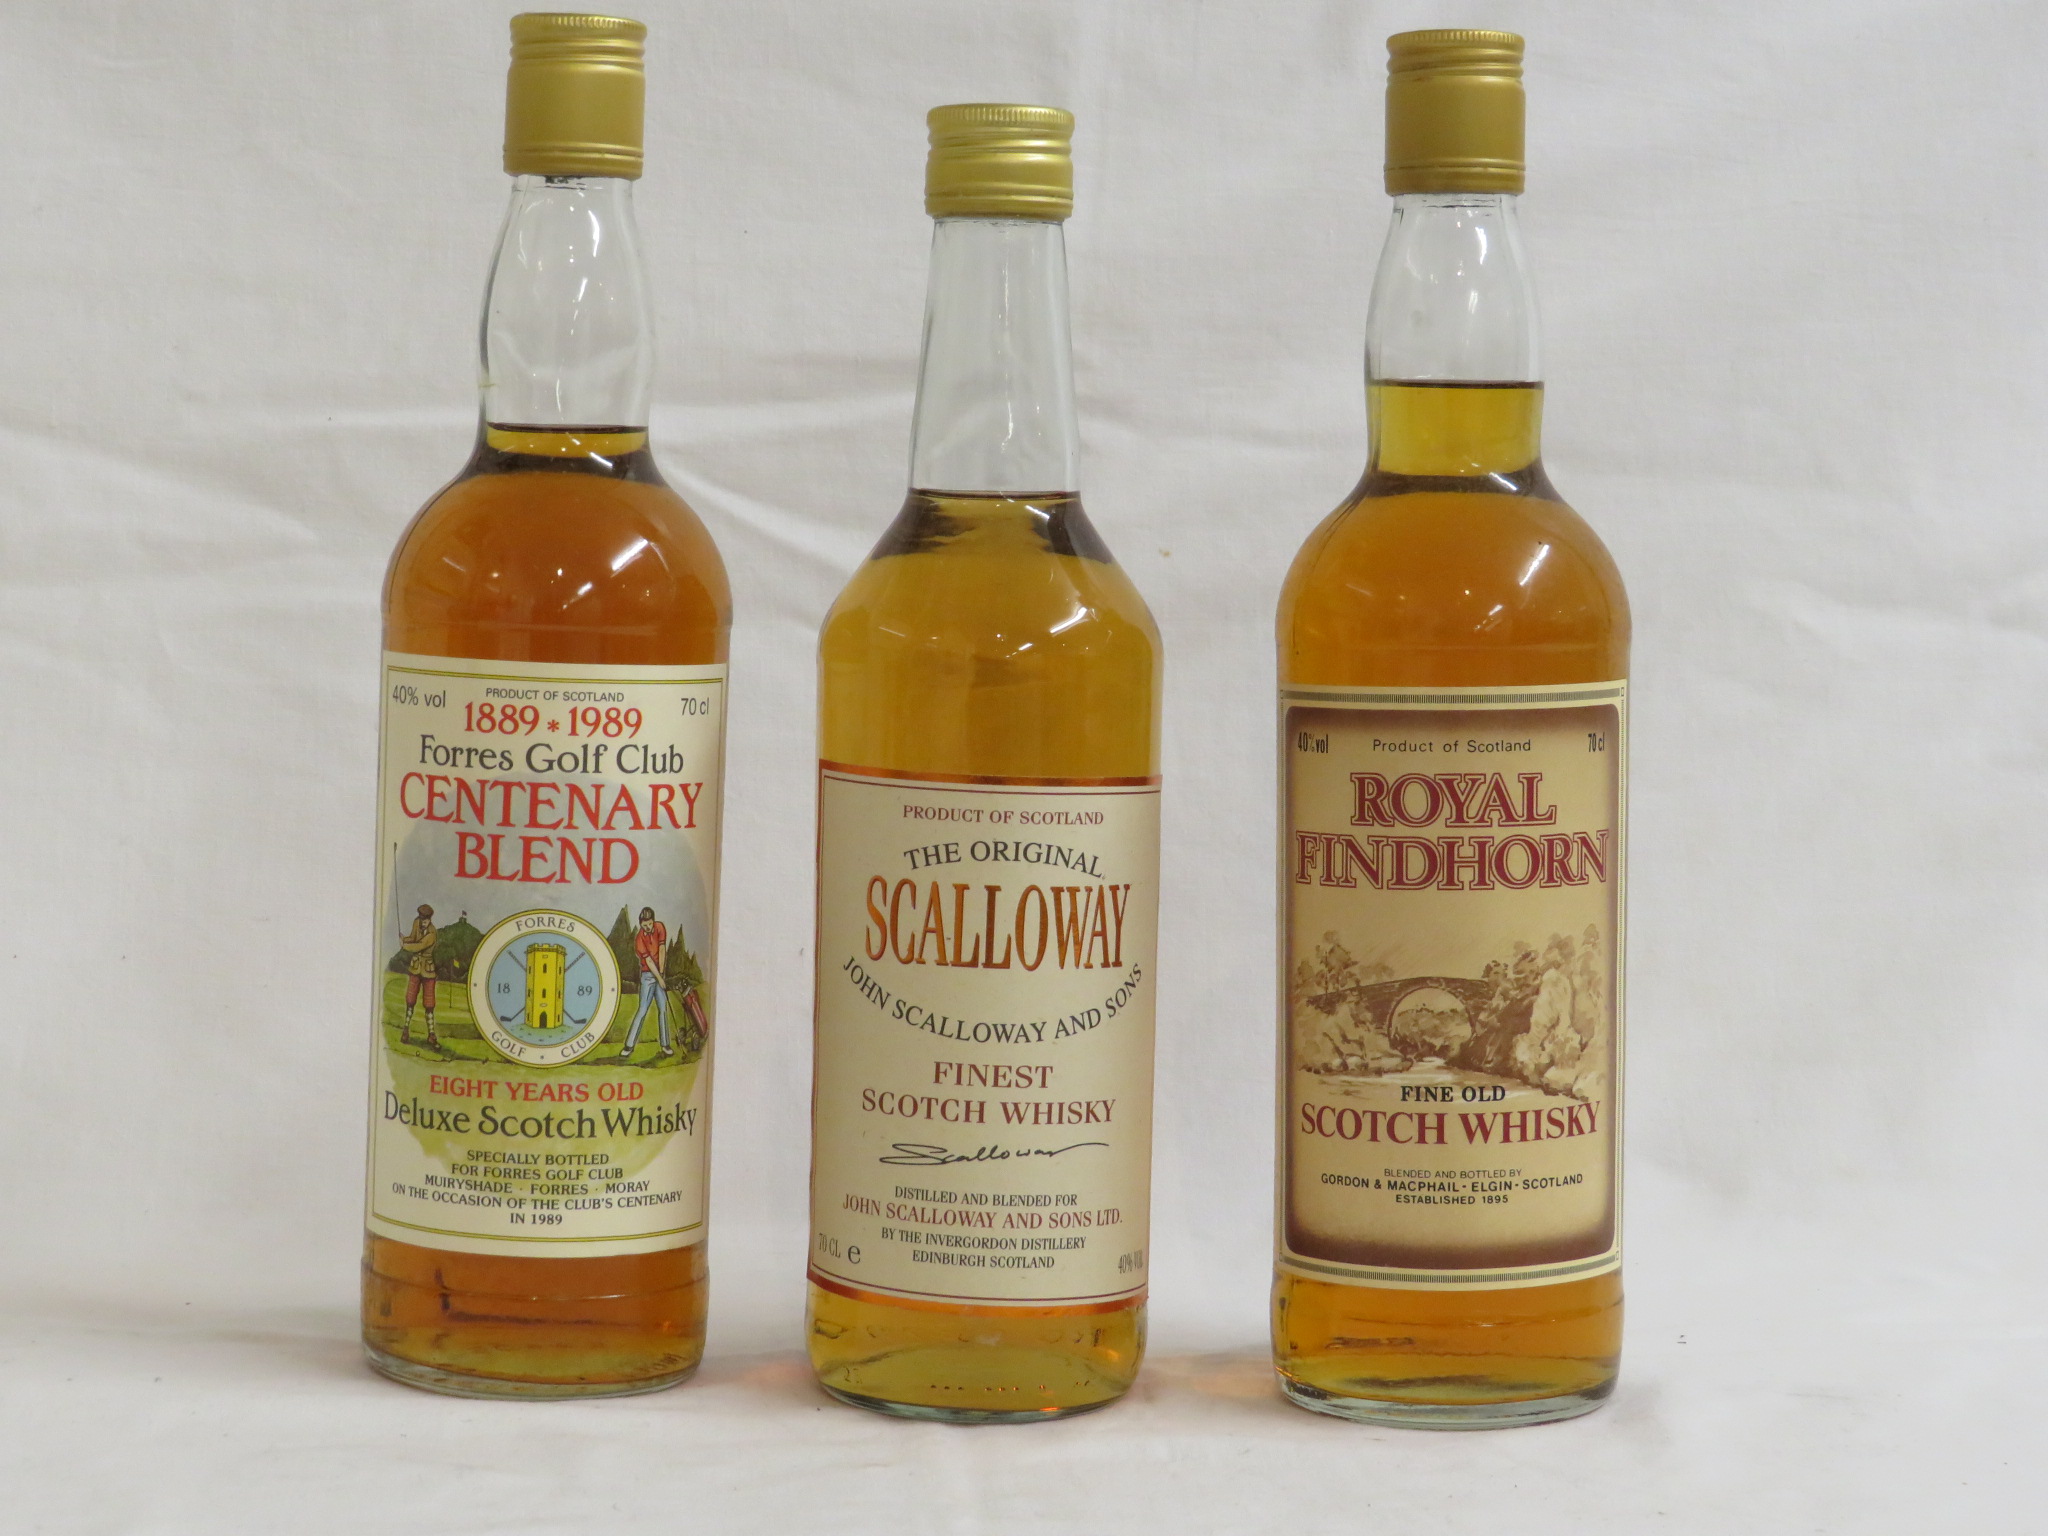 Bottle of Royal Findhorn fine old Scotch whisky, 70cl; bottle of Forres Golf Club centenary blend de - Image 3 of 4